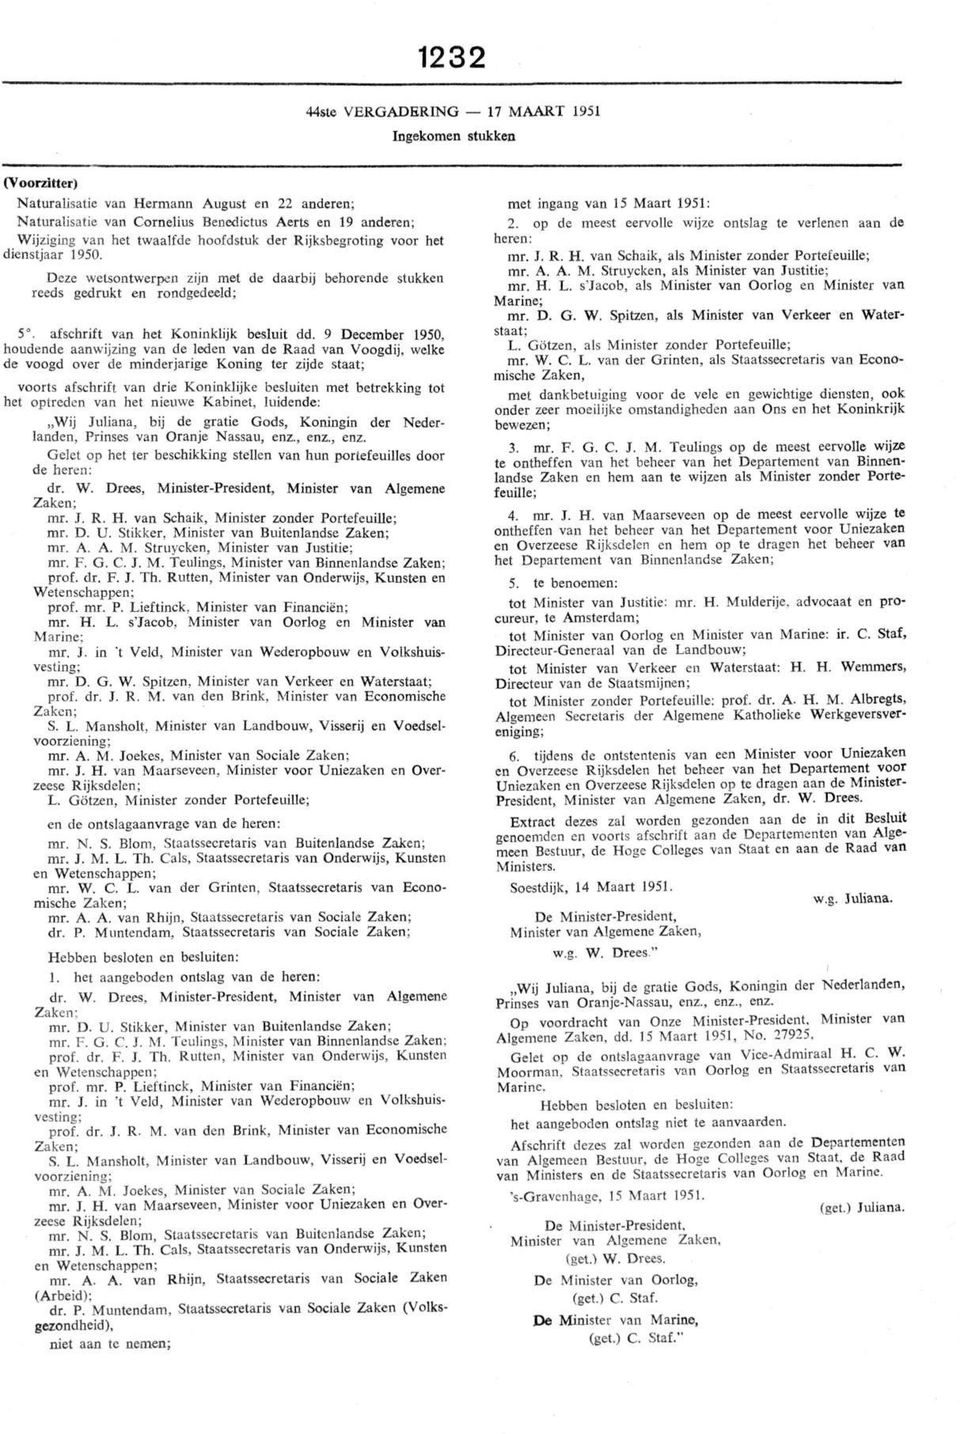 9 December 1950, houdende aanwijzing van de leden van de Raad van Voogdij, welke de voogd over de minderjarige Koning ter zijde staat; voorts afschrift van drie Koninklijke besluiten met betrekking